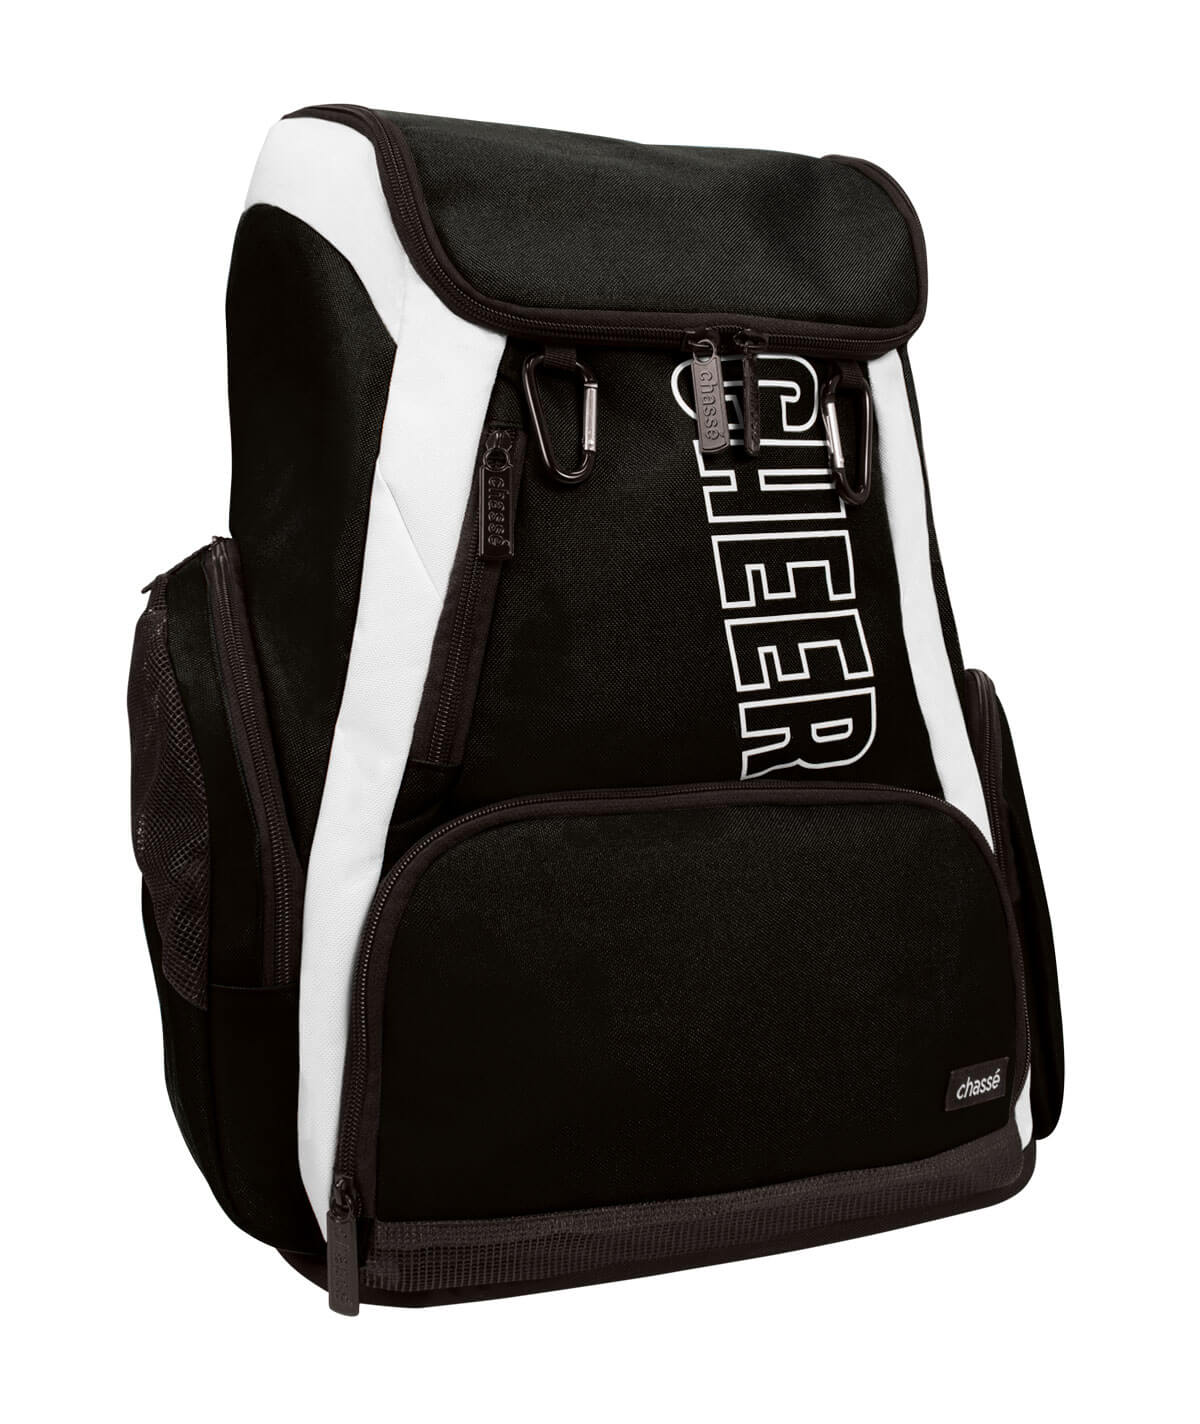 Cheer Bag Black Weekender Nfinity Backpack 